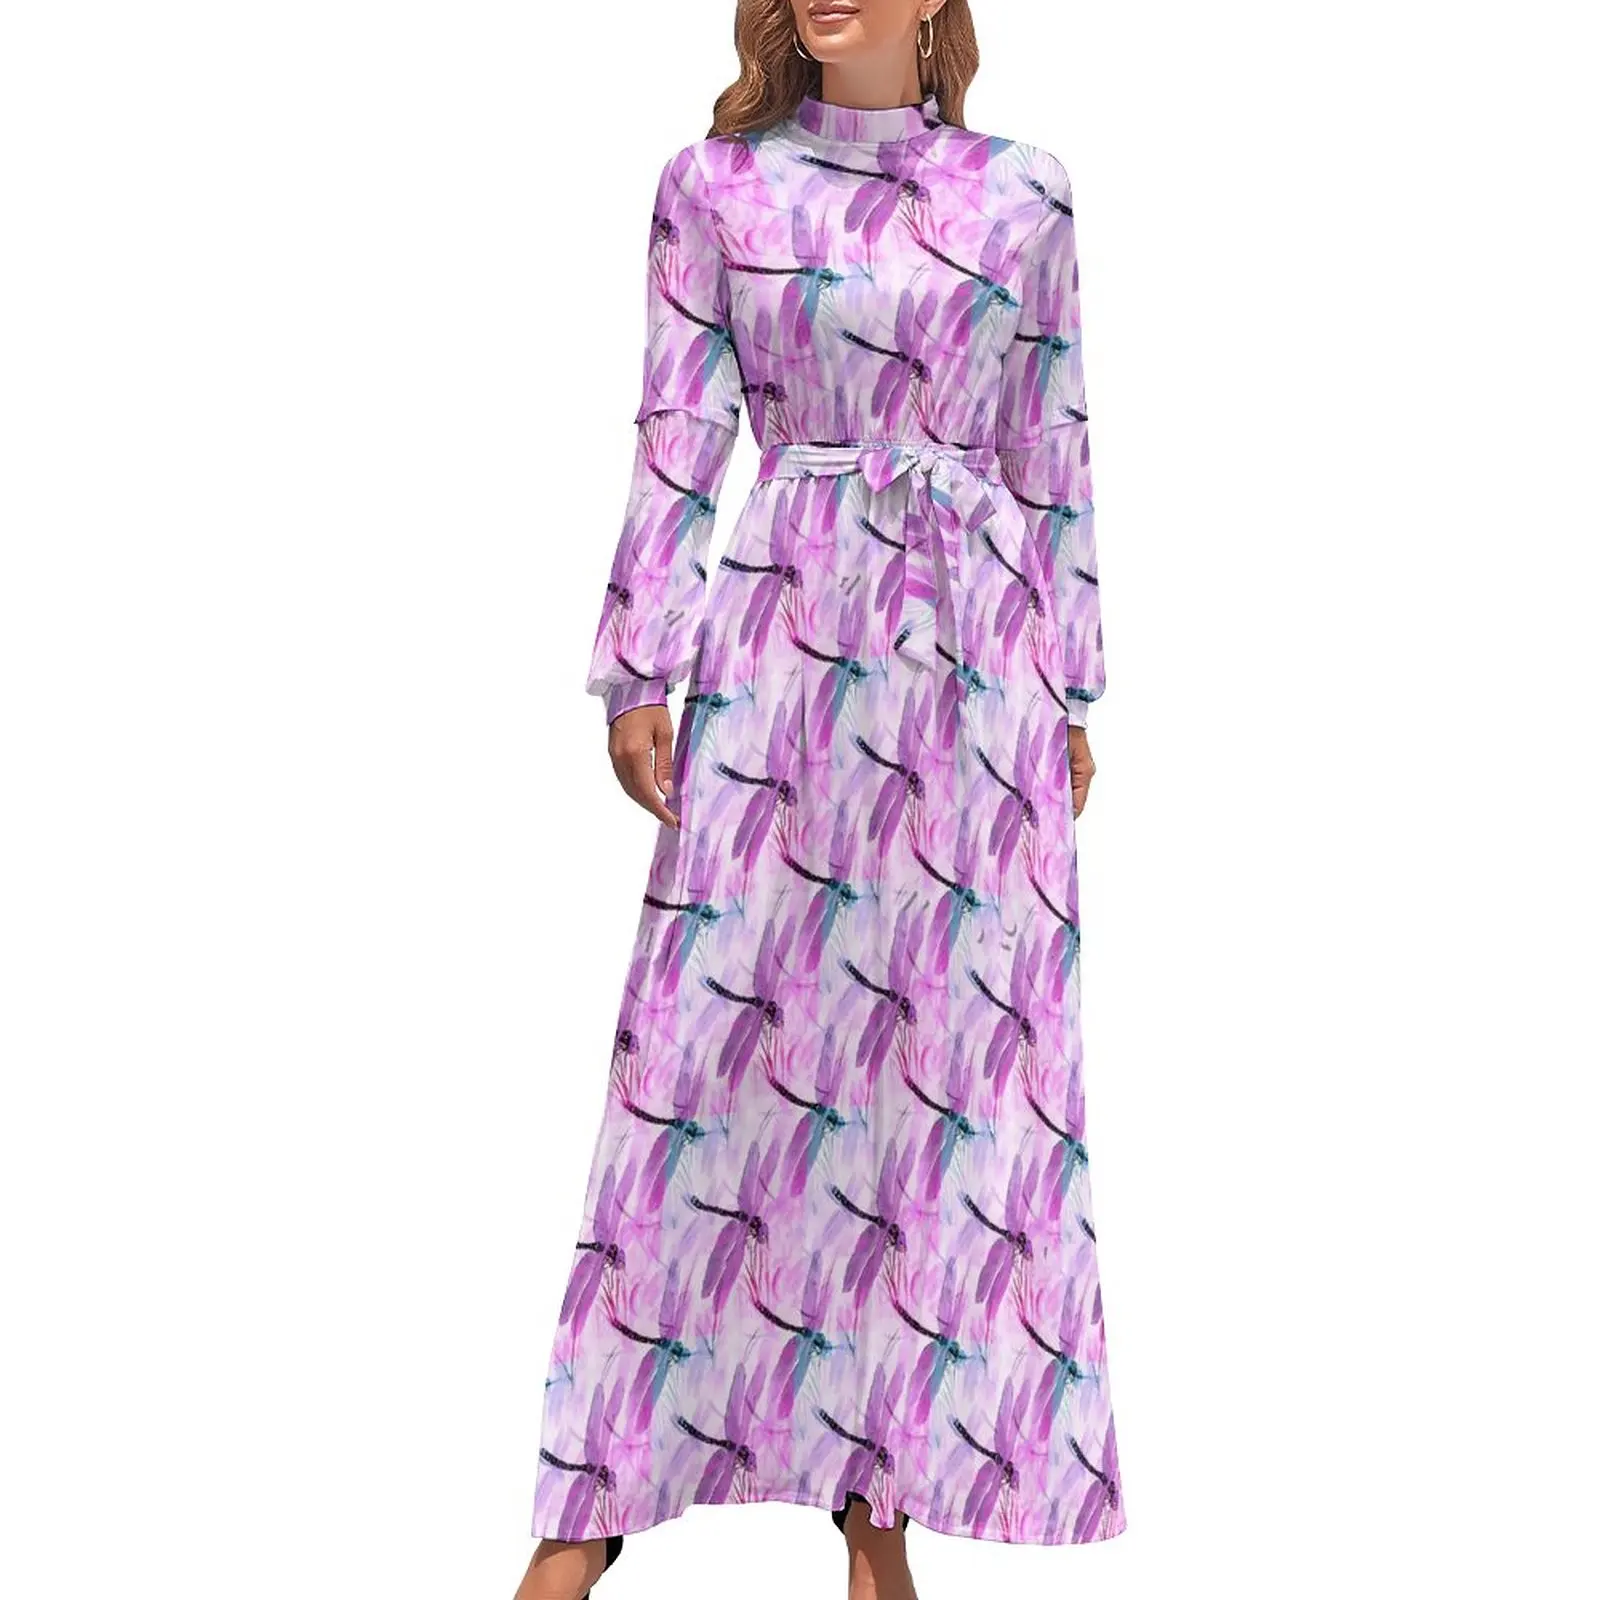 

Женское пляжное платье в стиле бохо, длинное розовое платье макси с принтом в виде стрекозы и высокой талией, элегантное платье с длинным рукавом в уличном стиле